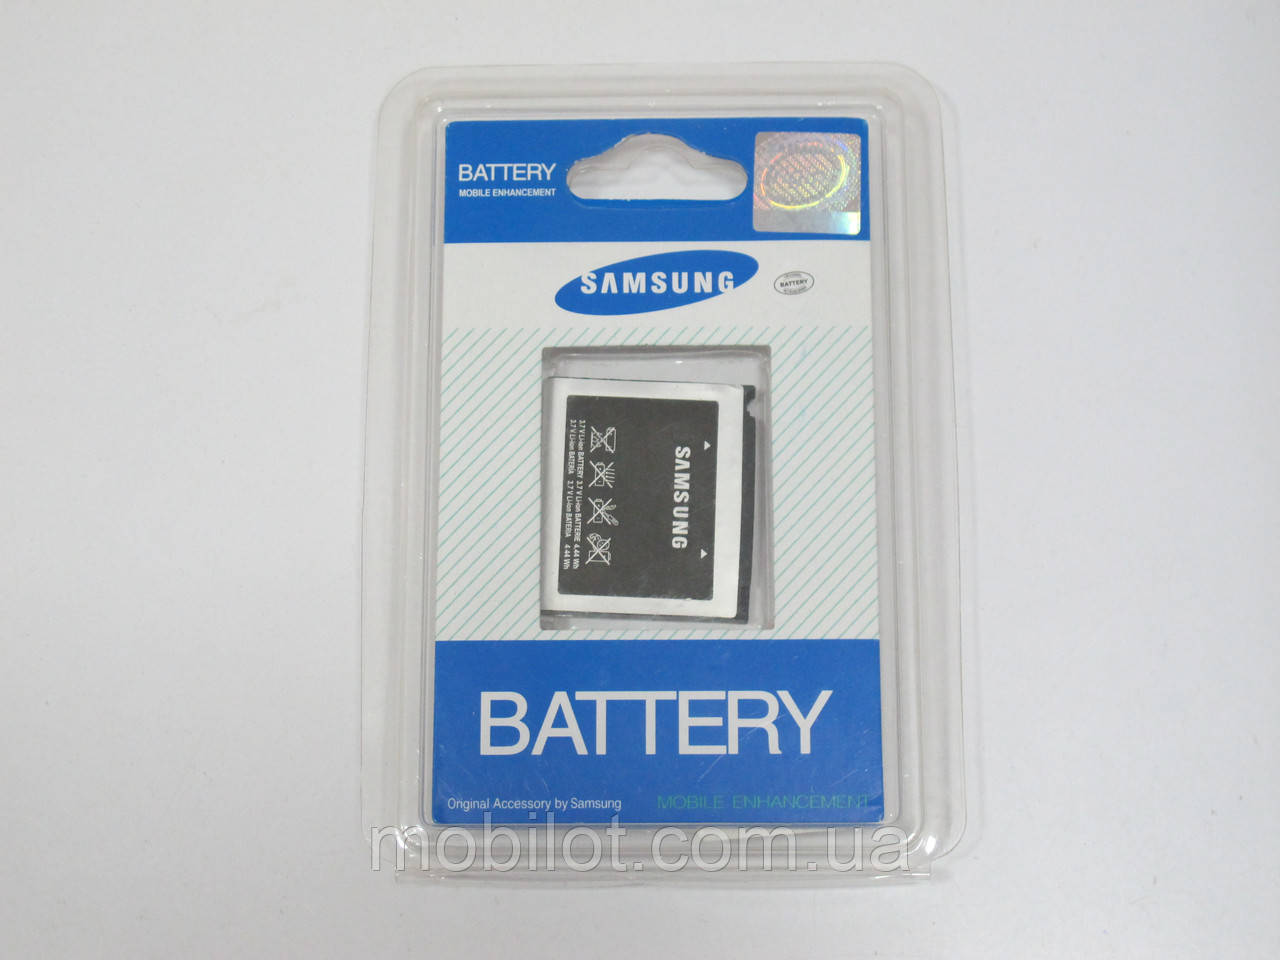 Аккумулятор Samsung U600 (AB394235CE) (NZ-4286)Нет в наличии